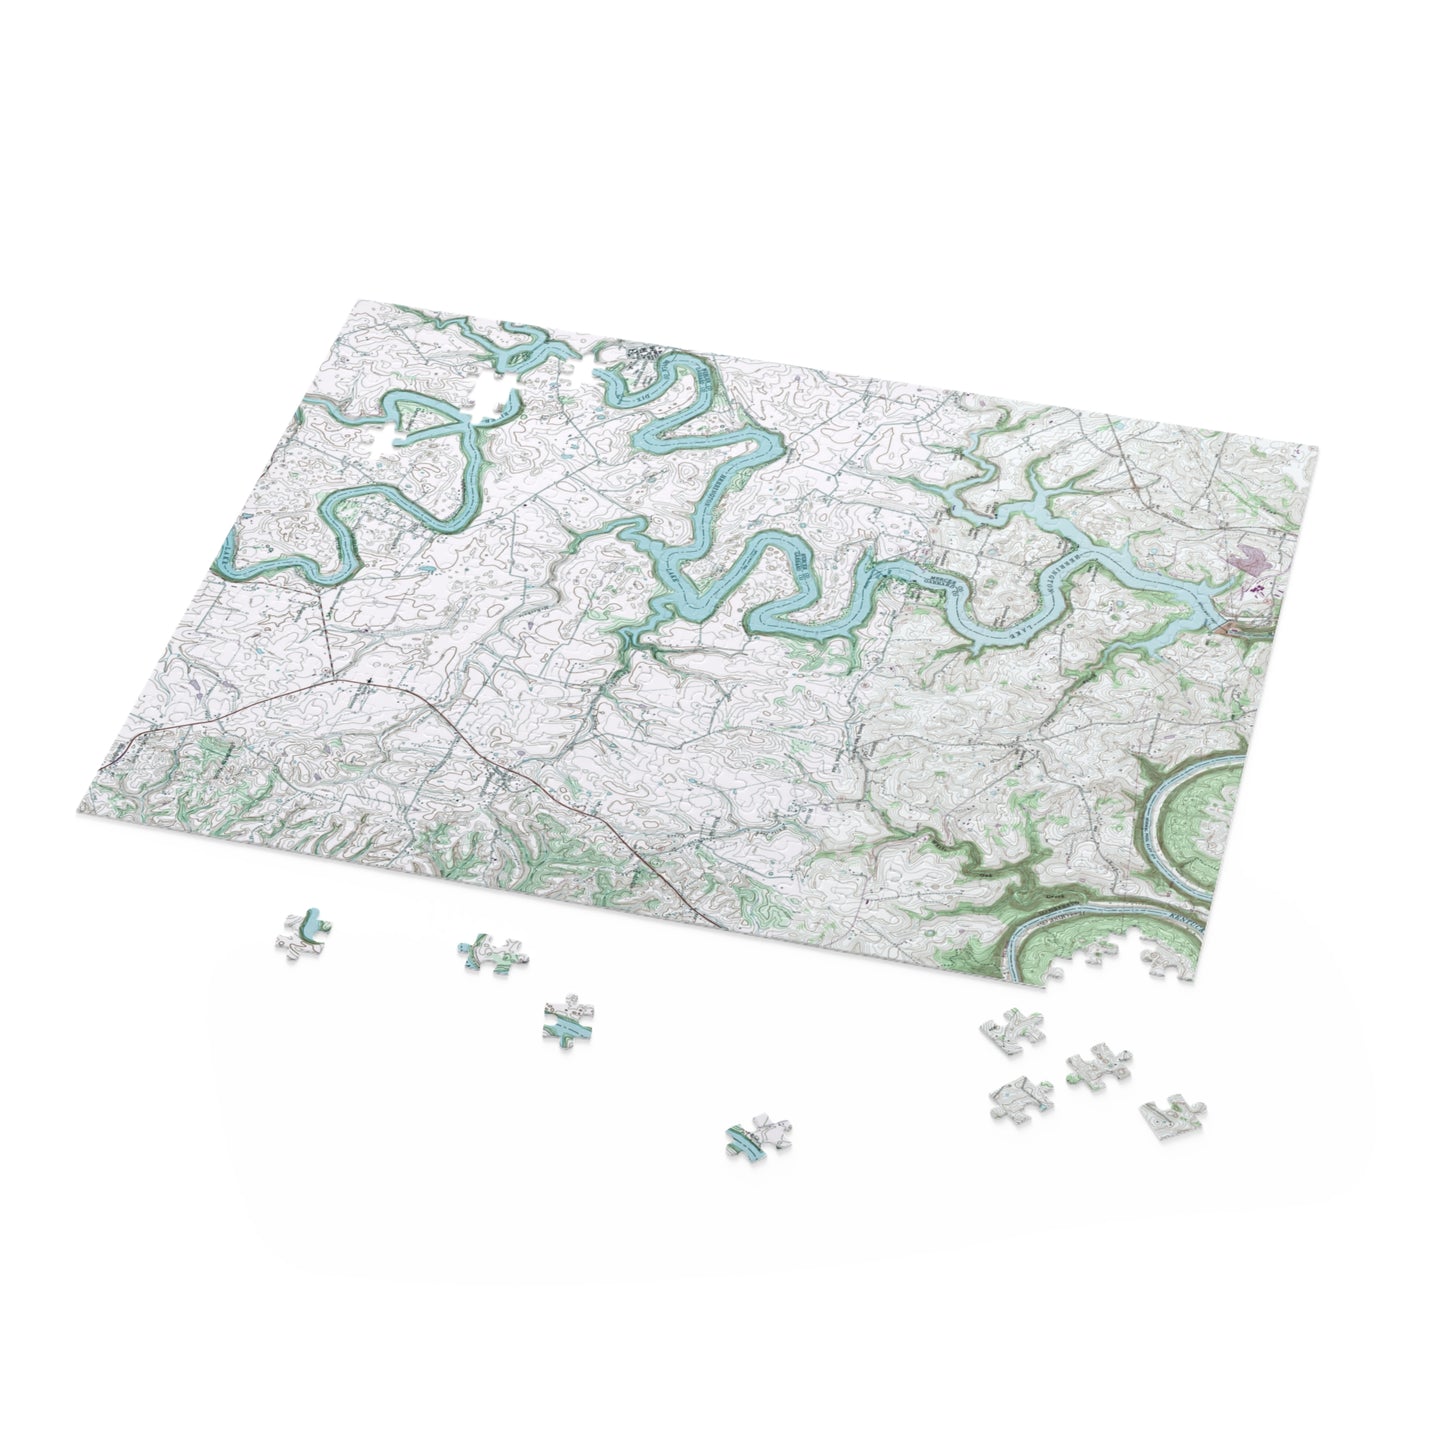 Herrington Lake 1952 Topography Map Puzzle (252, 500-Piece)